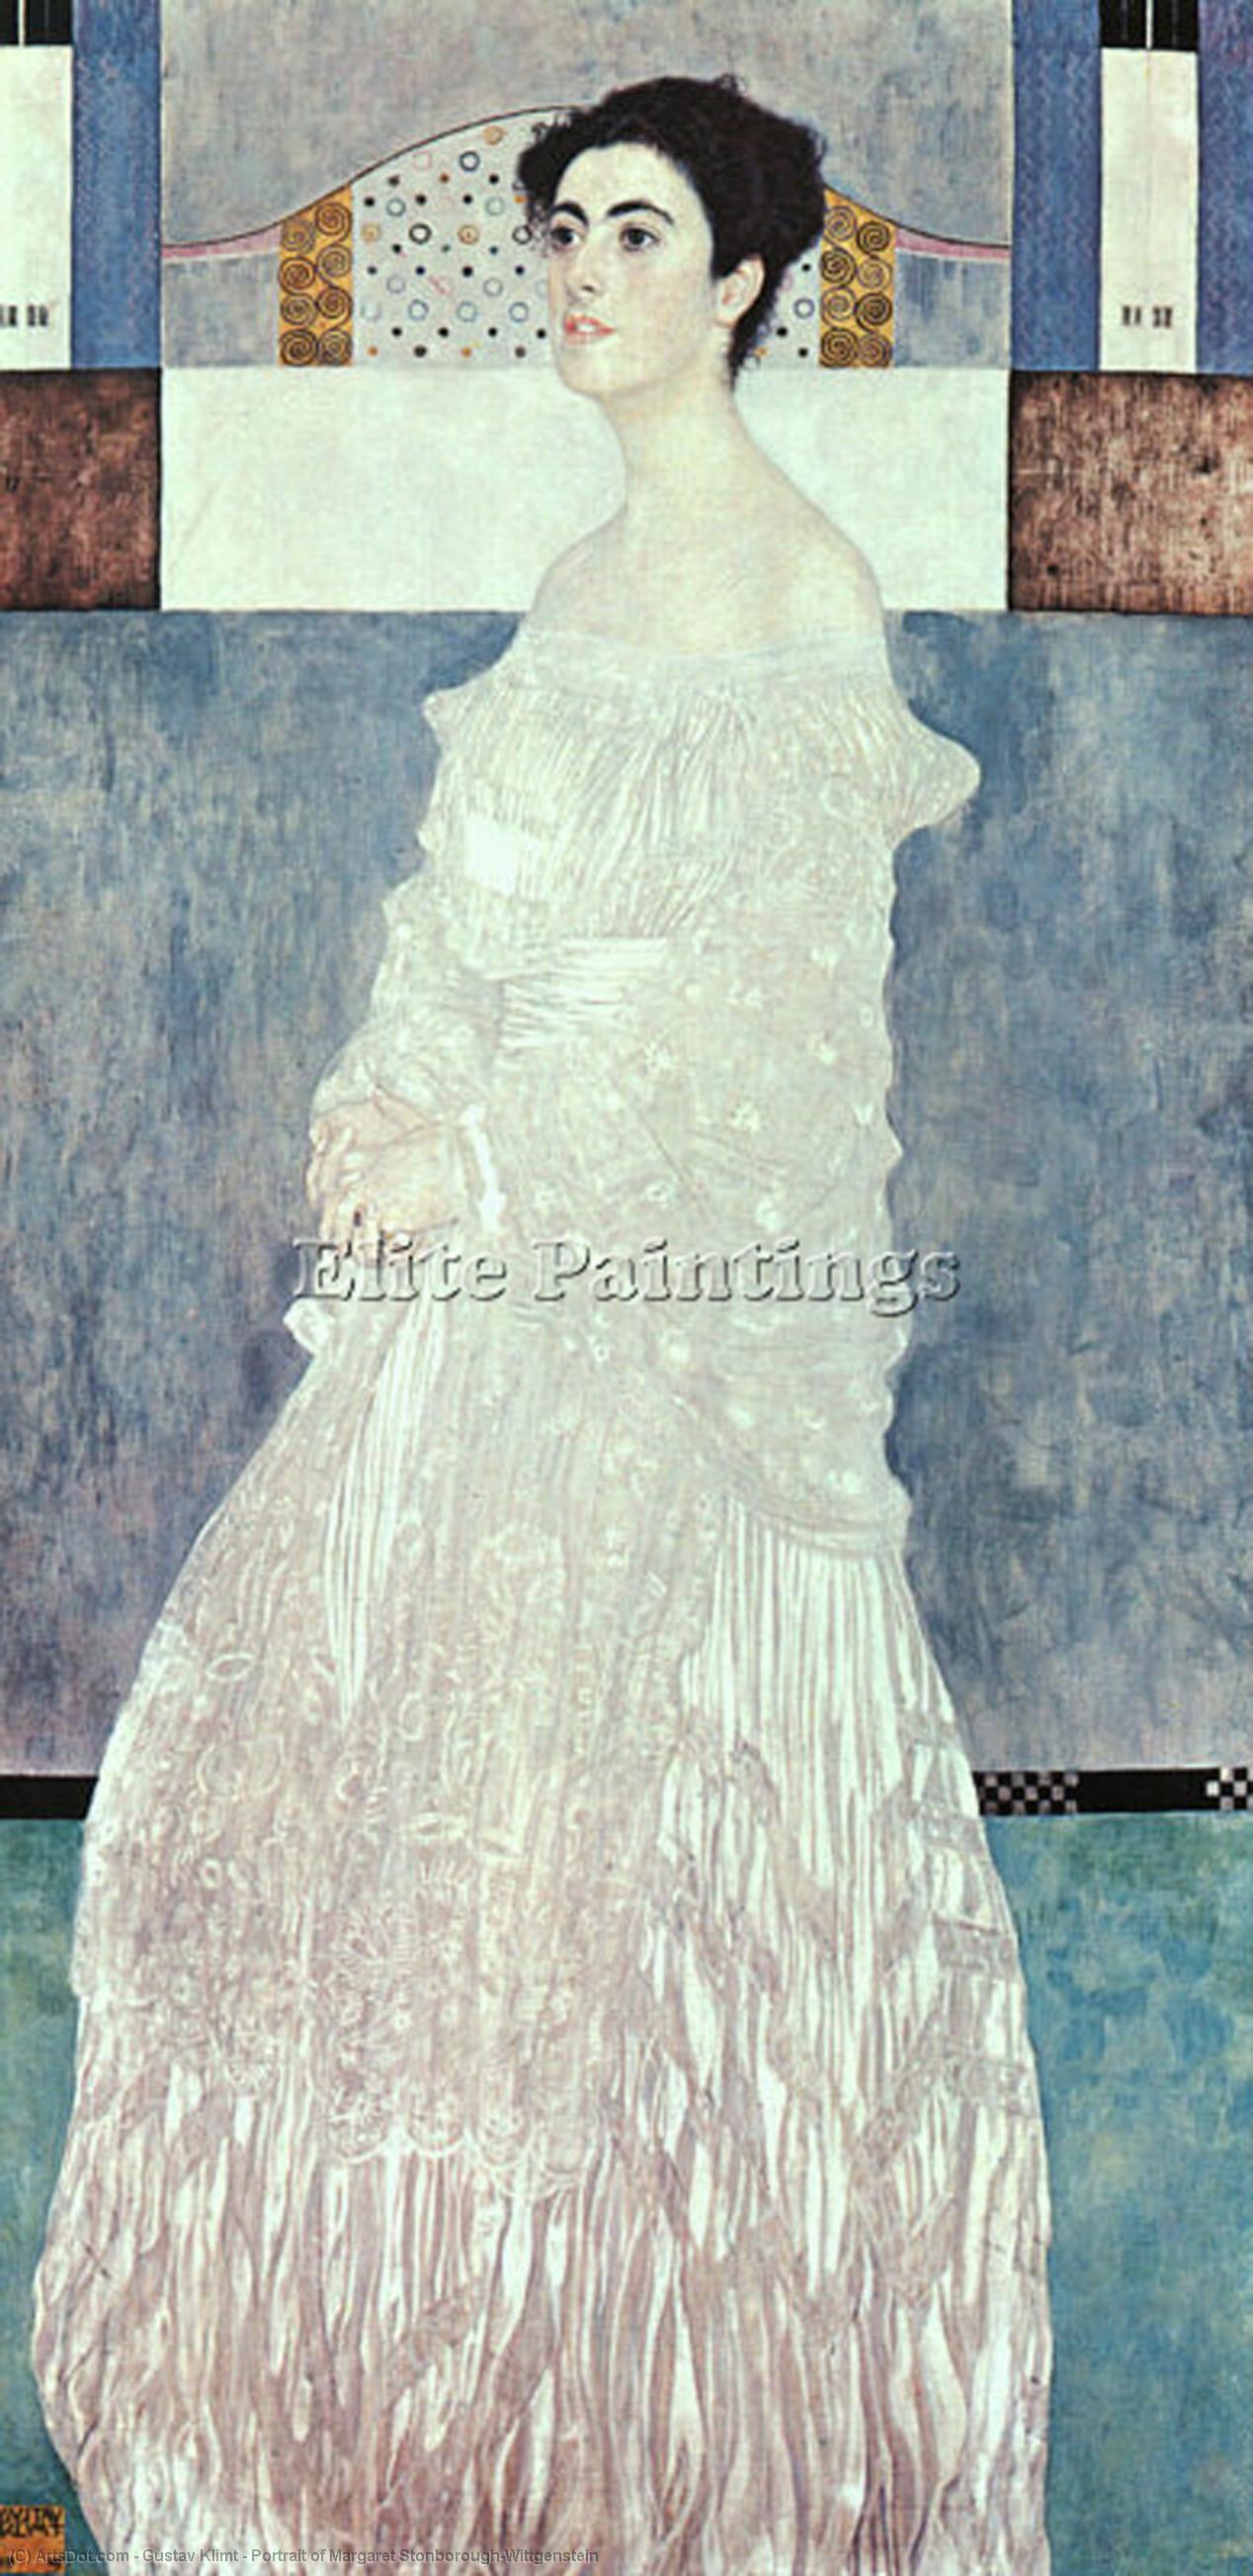 Wikoo.org - موسوعة الفنون الجميلة - اللوحة، العمل الفني Gustav Klimt - Portrait of Margaret Stonborough-Wittgenstein